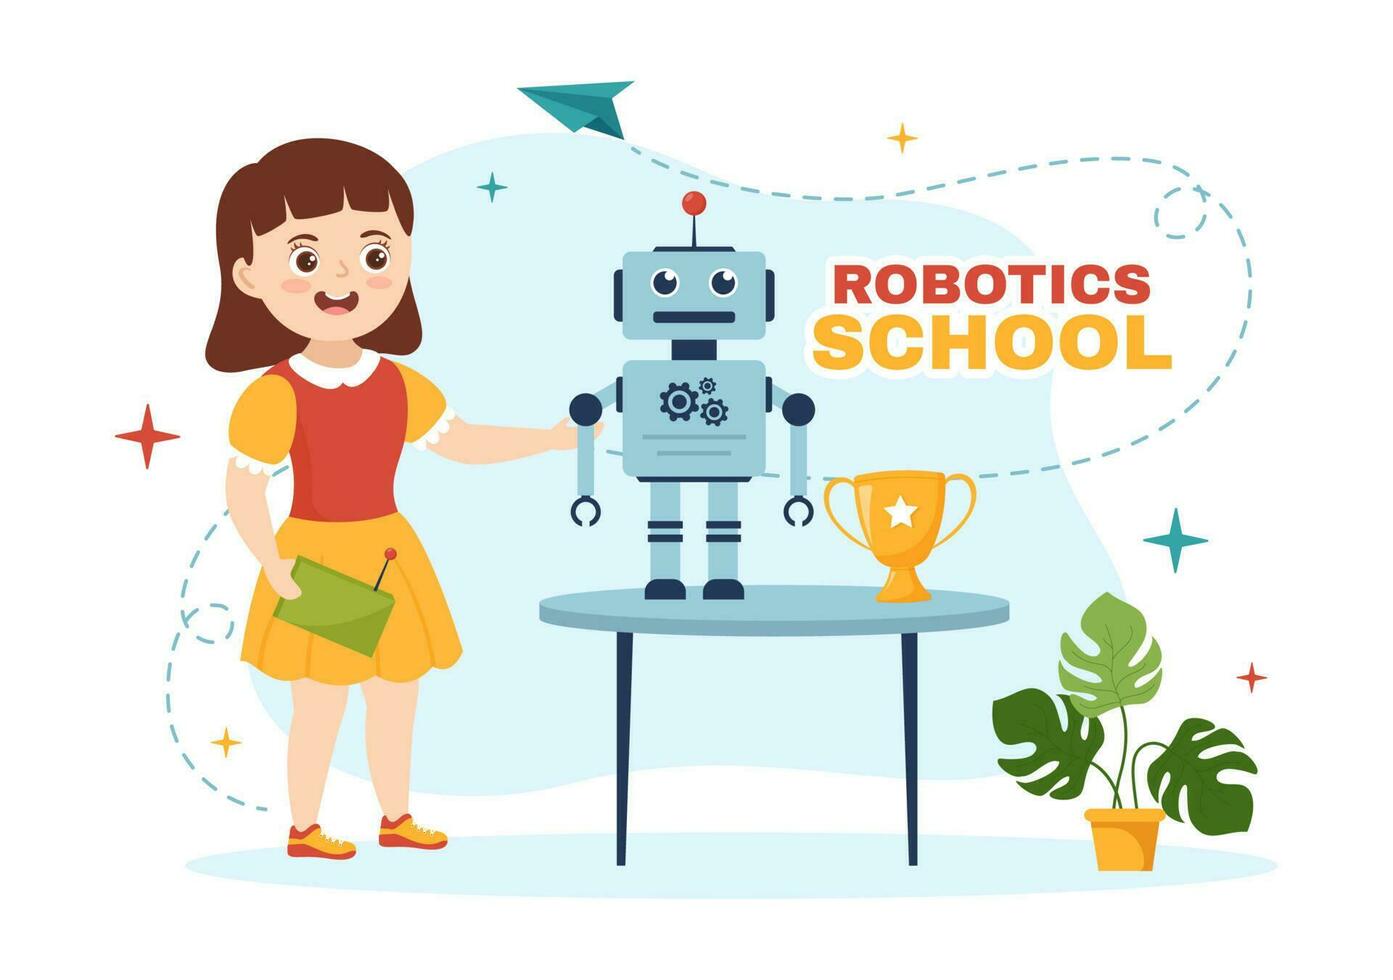 Robotik Schule Vektor Illustration mit Kinder Roboter Projekt zu Programmierung und Ingenieurwesen Roboter im eben Karikatur Hand gezeichnet Landung Seite Vorlagen